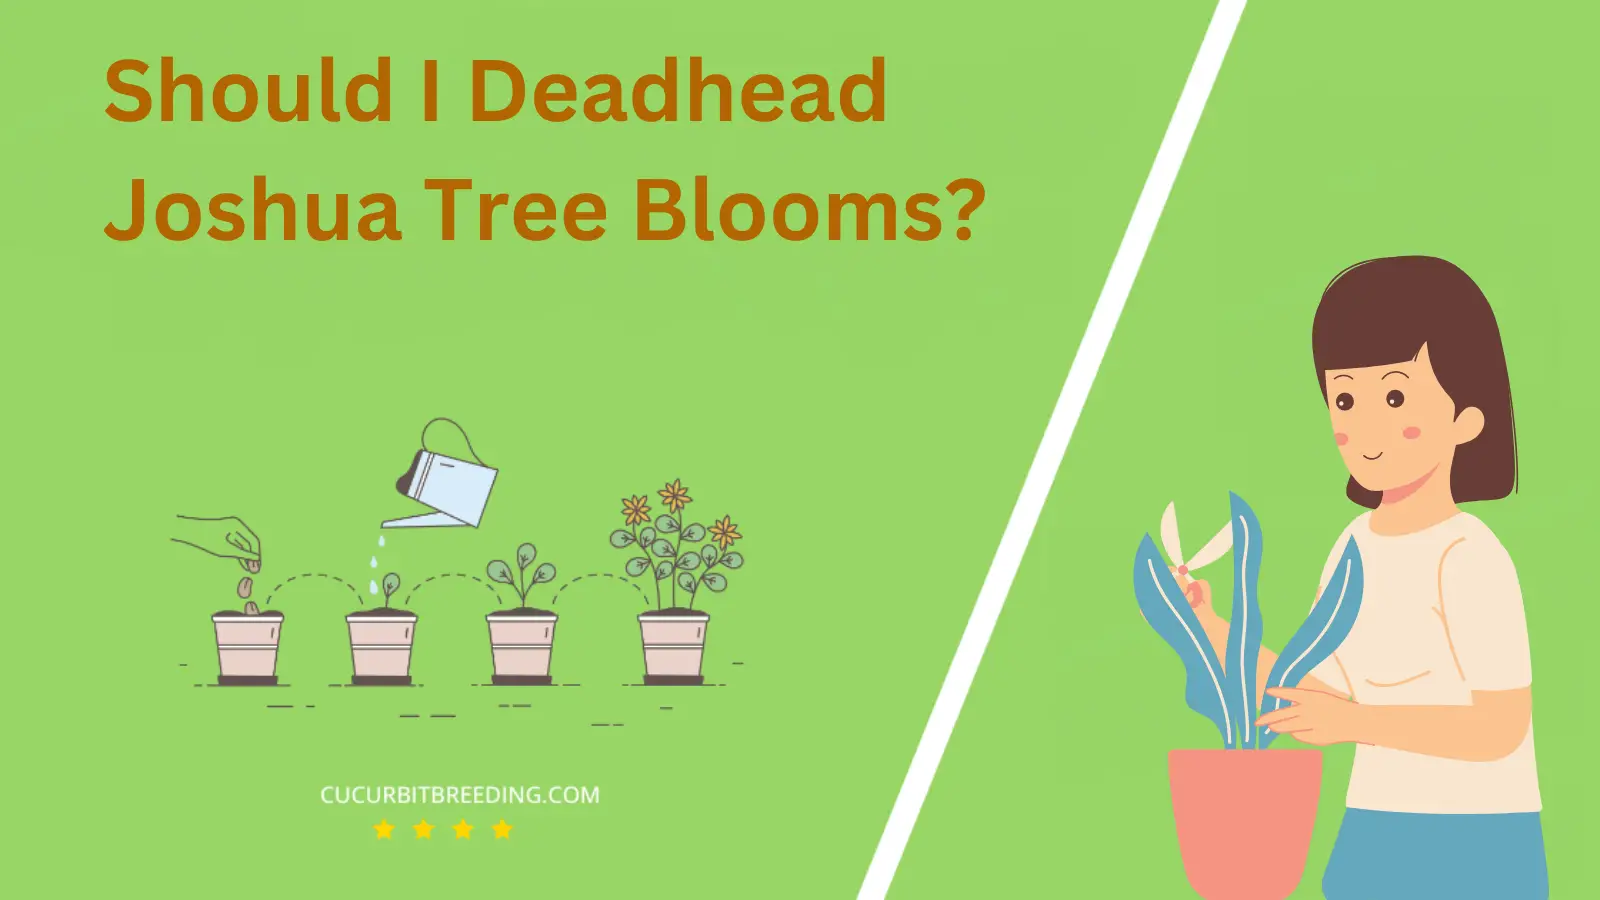 Should I Deadhead Joshua Tree Blooms?